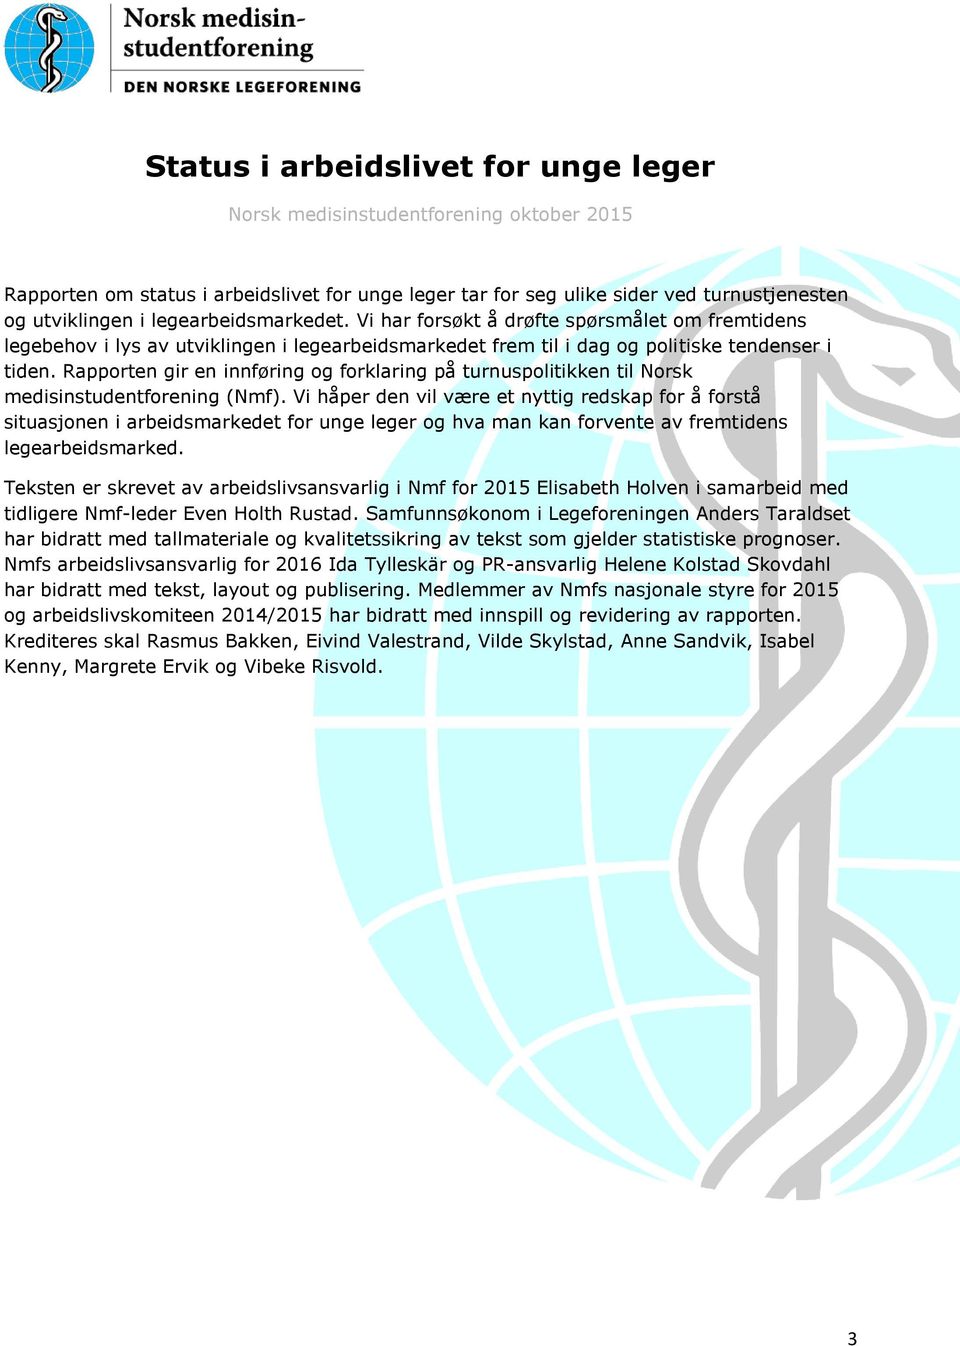 Rapporten gir en innføring og forklaring på turnuspolitikken til Norsk medisinstudentforening (Nmf).